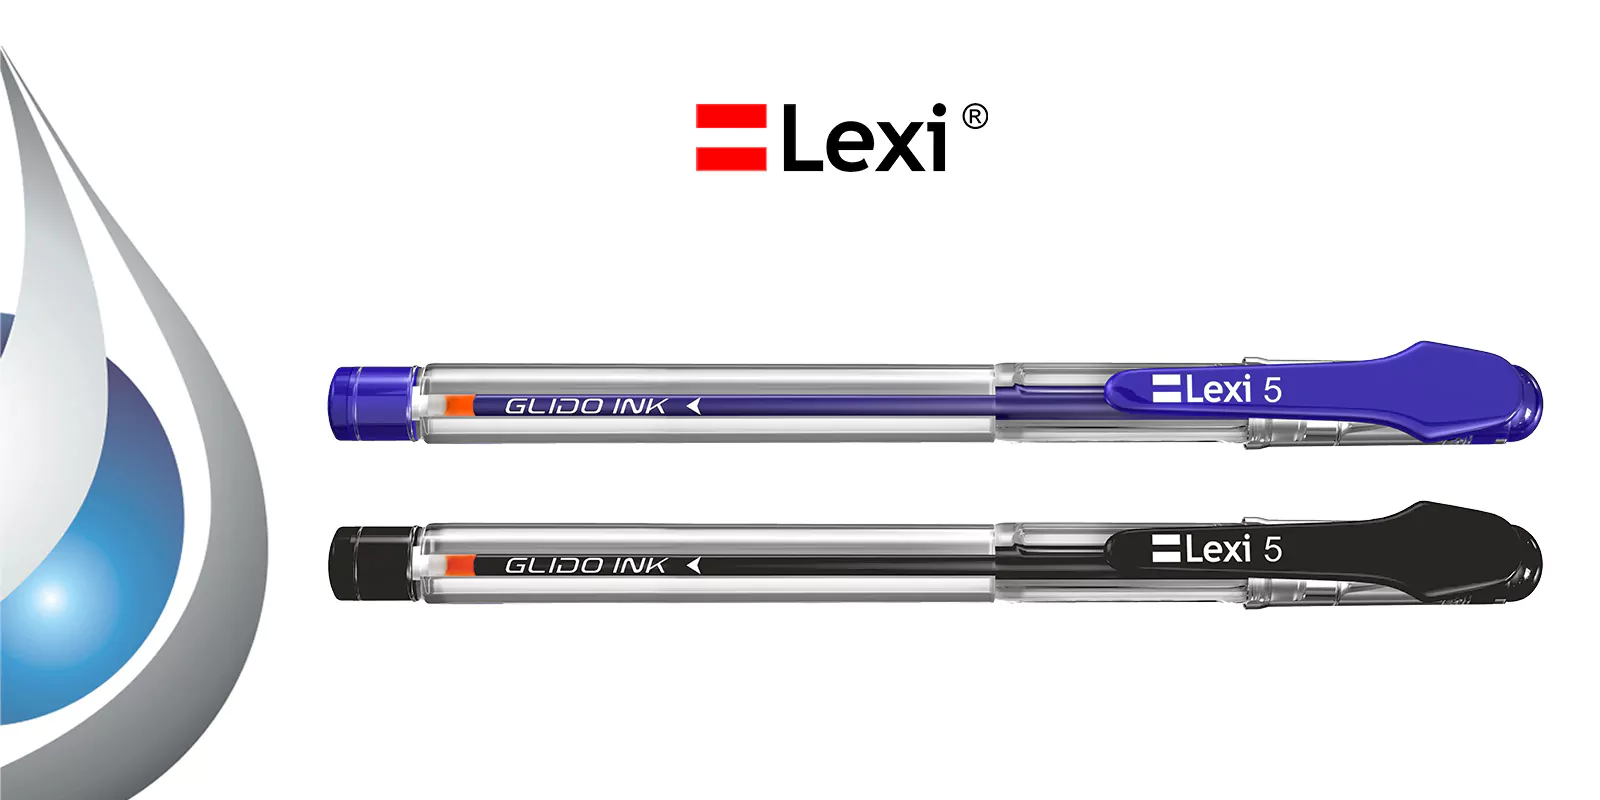 Lexi Pen product